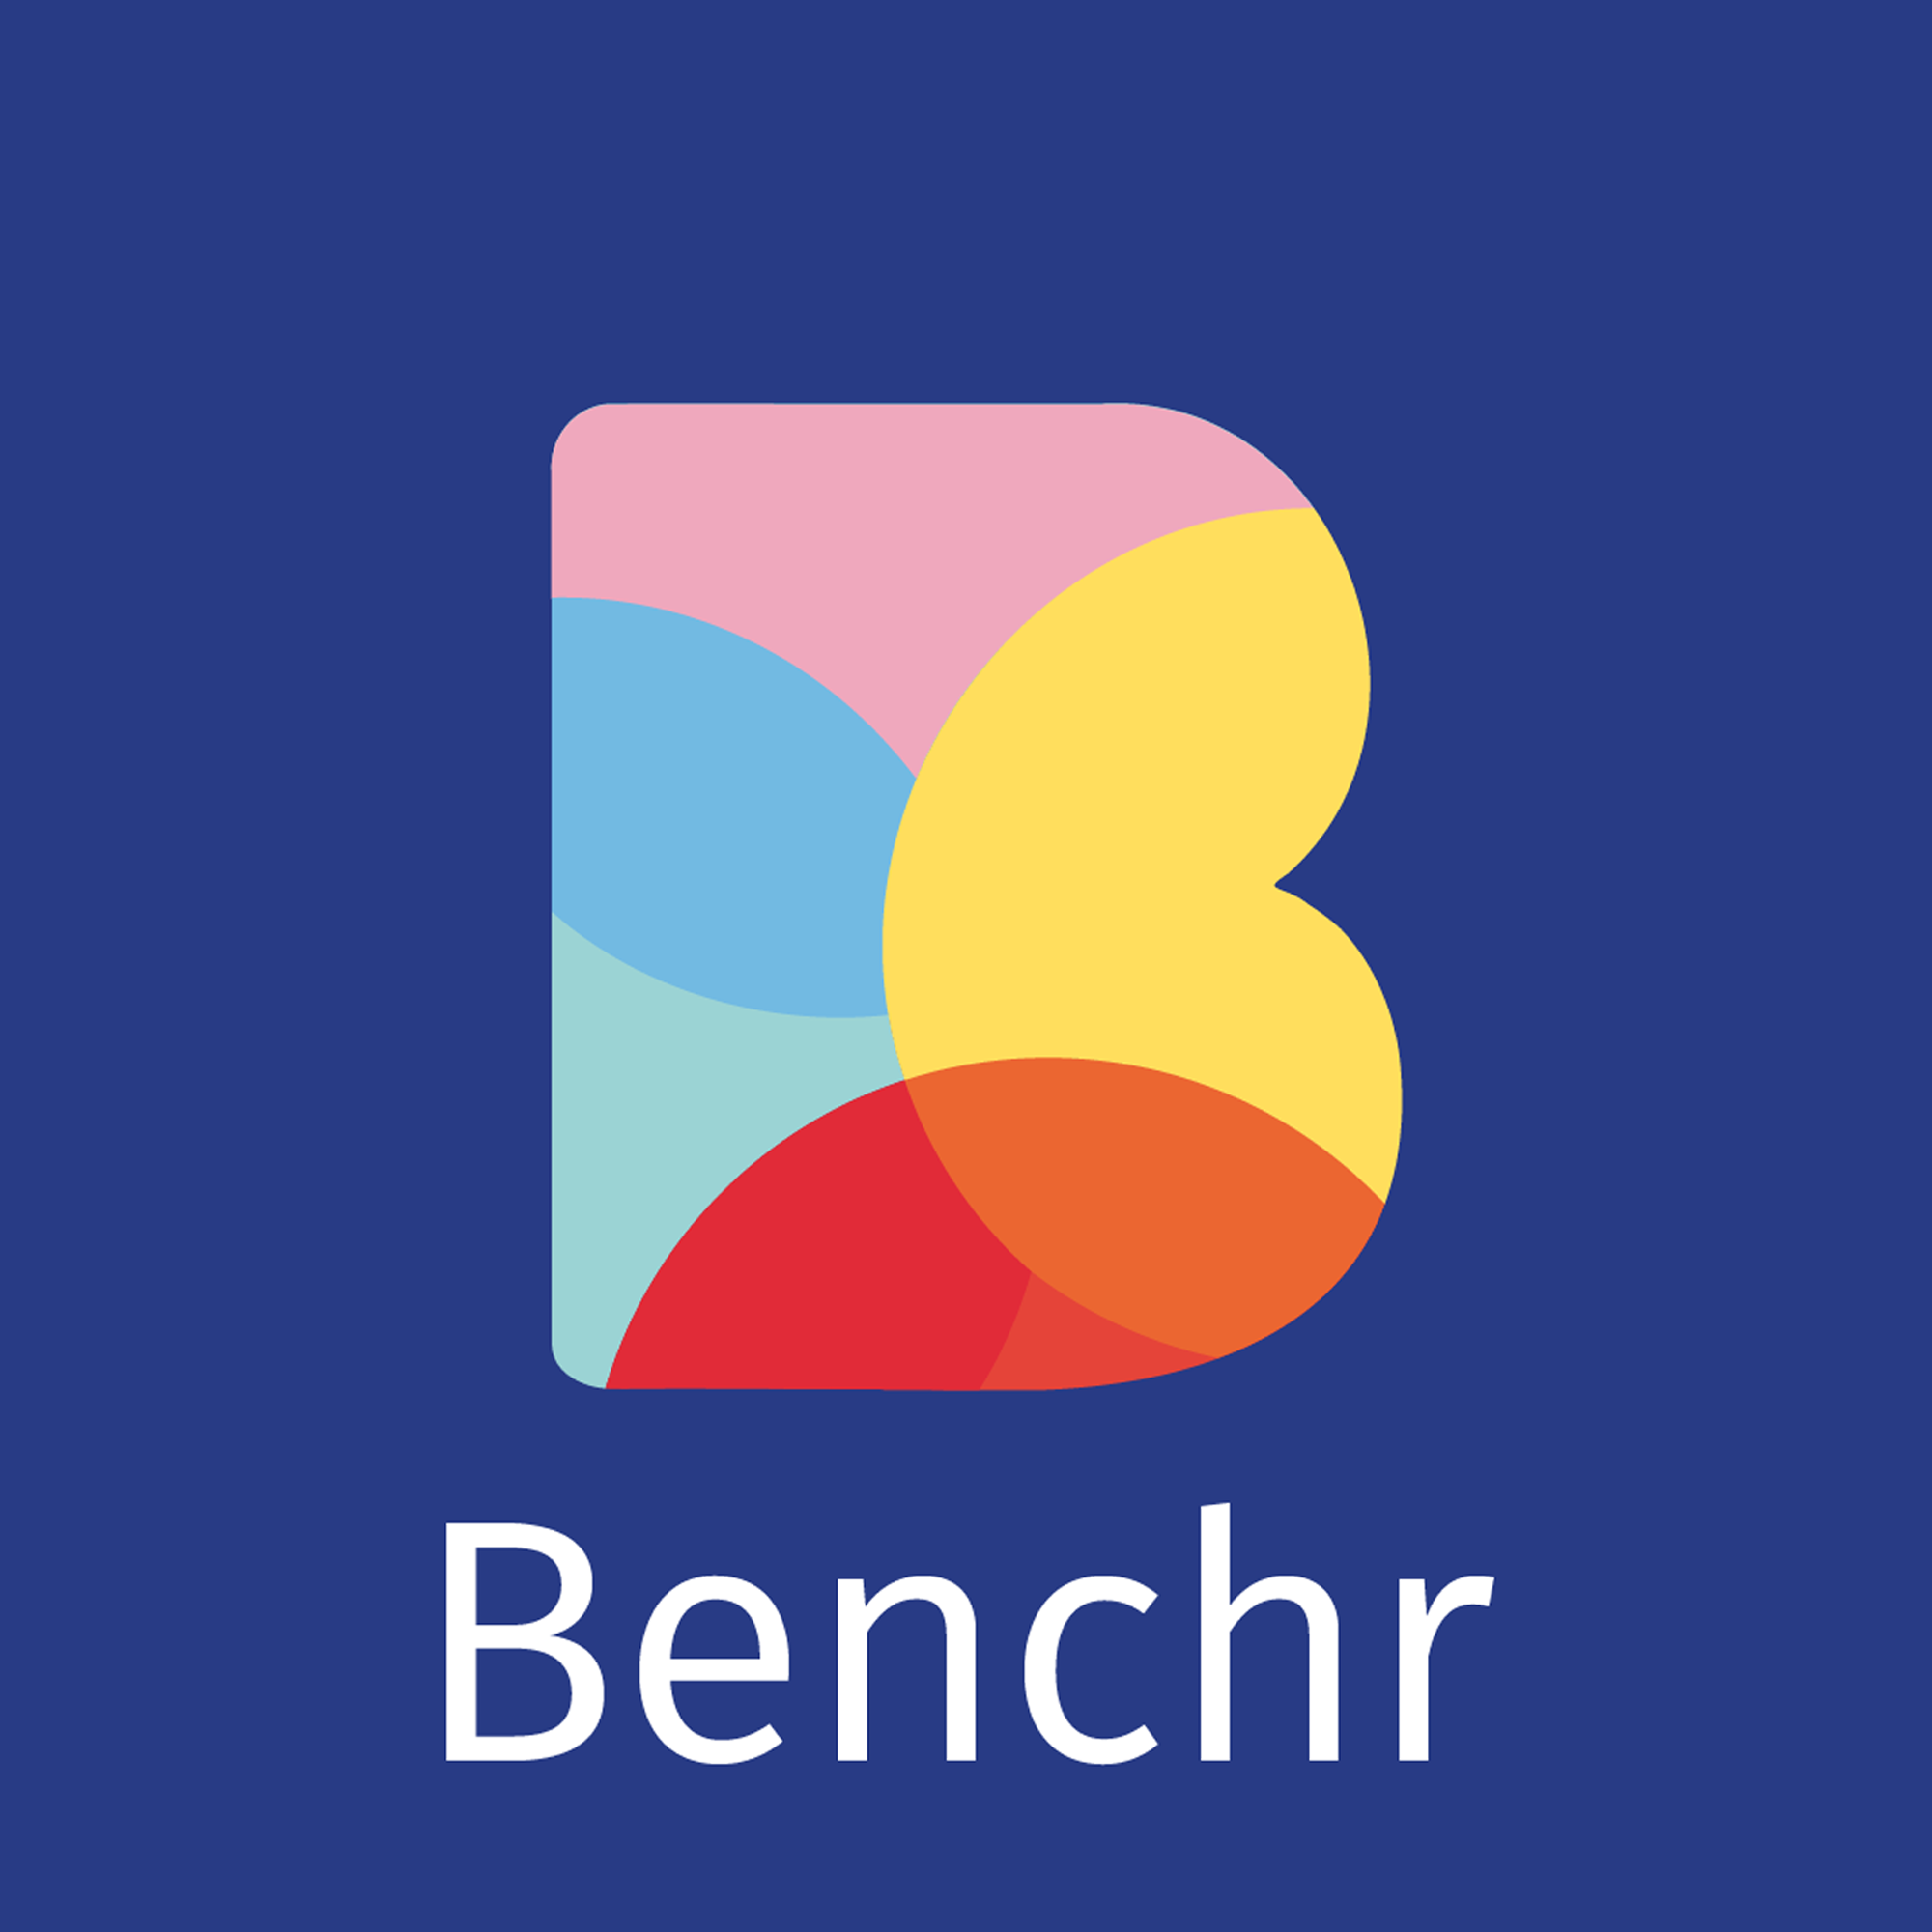 Benchr